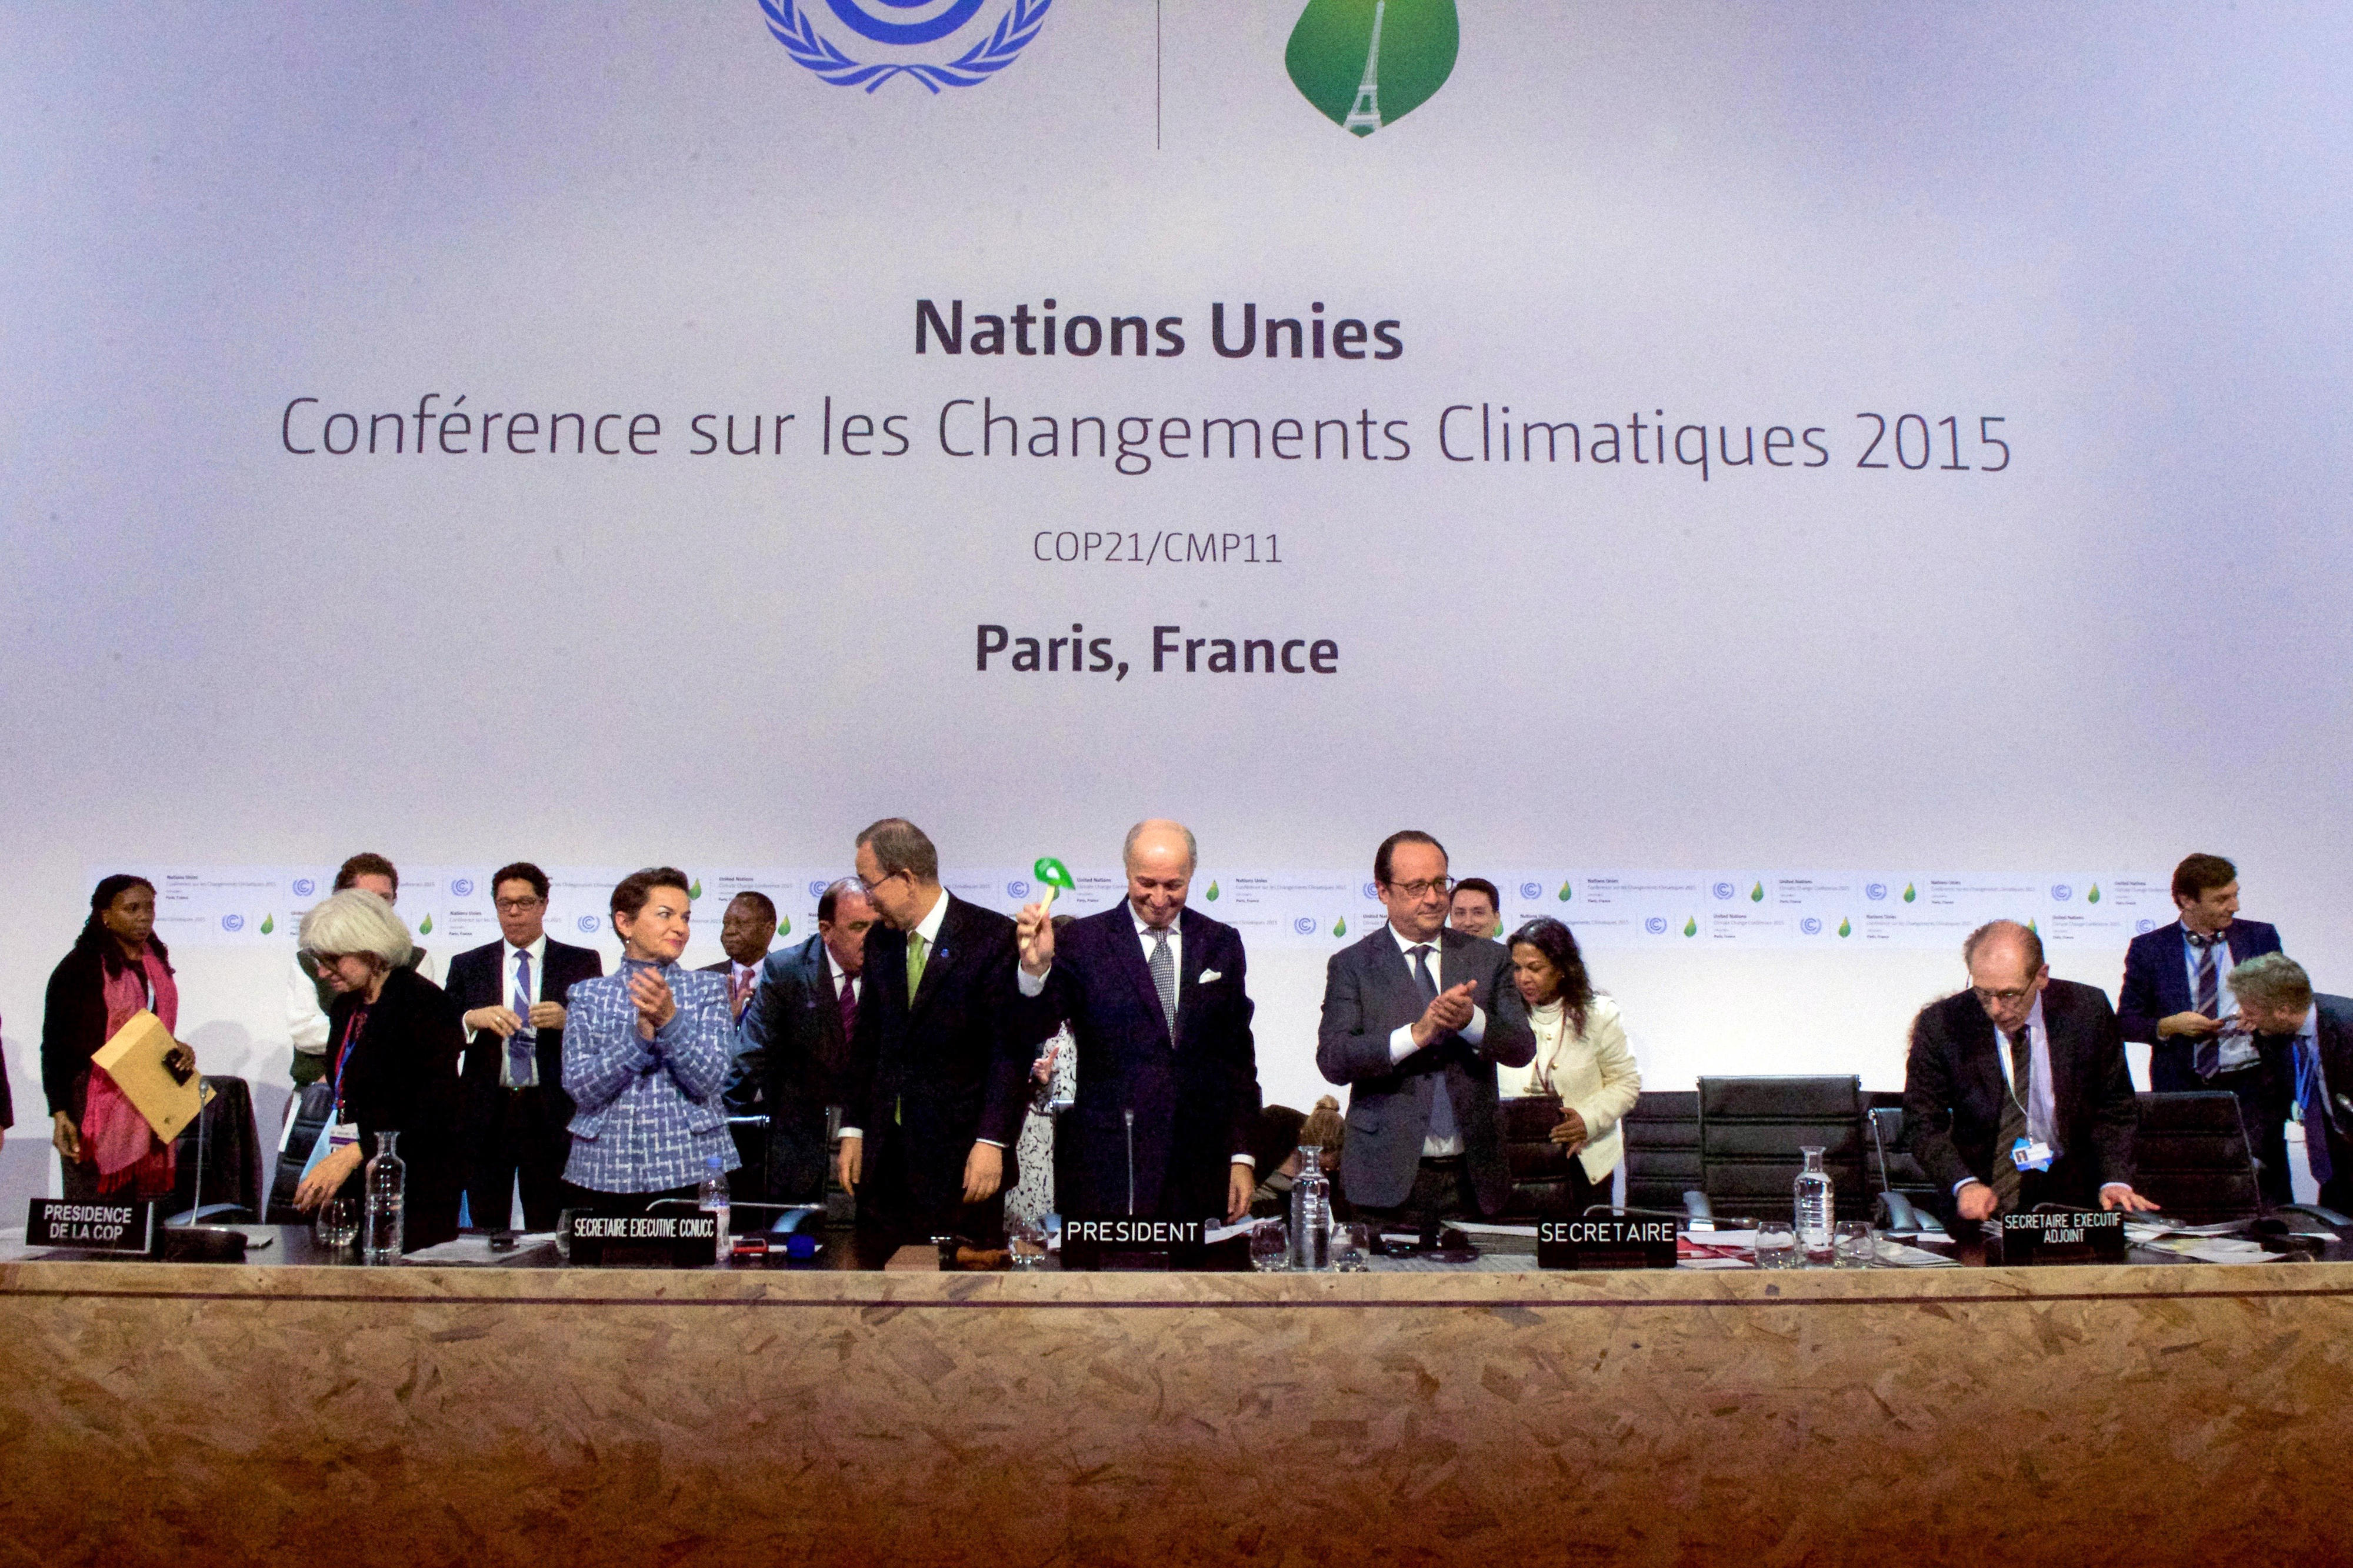 Der damalige französische Außenminister Laurent Fabius – Präsident der COP21-Klimakonferenz – schlägt am 12. Dezember 2015 den Hammer nieder, nachdem Vertreter von 196 Ländern während der UN-Klimakonferenz auf dem Flughafen Le Bourget in Paris, Frankreich, ein weitreichendes Umweltabkommen verabschiedet haben.